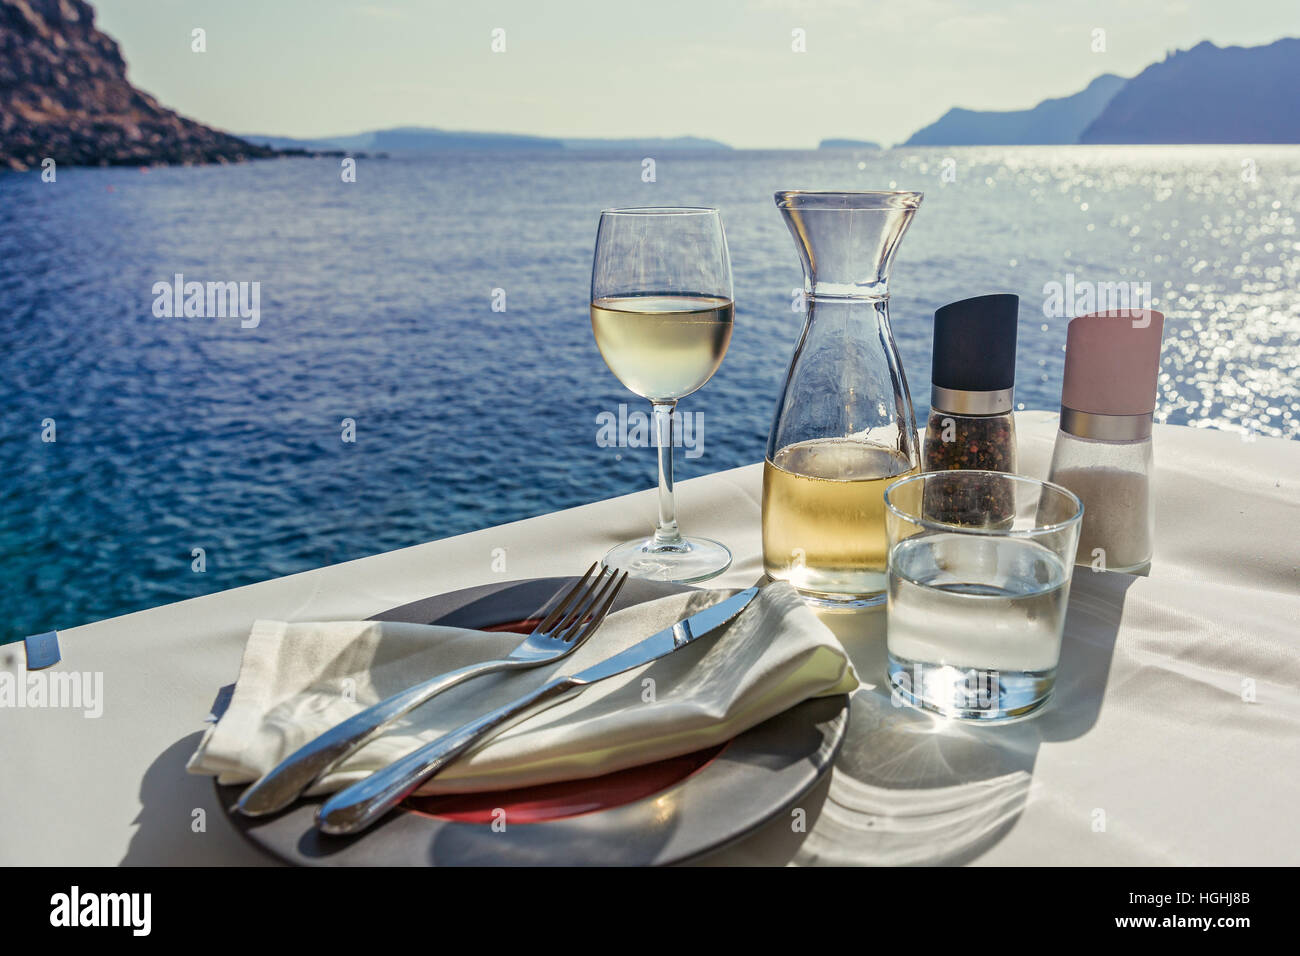 La tabella con il cibo e il vino sullo sfondo del mare Foto Stock